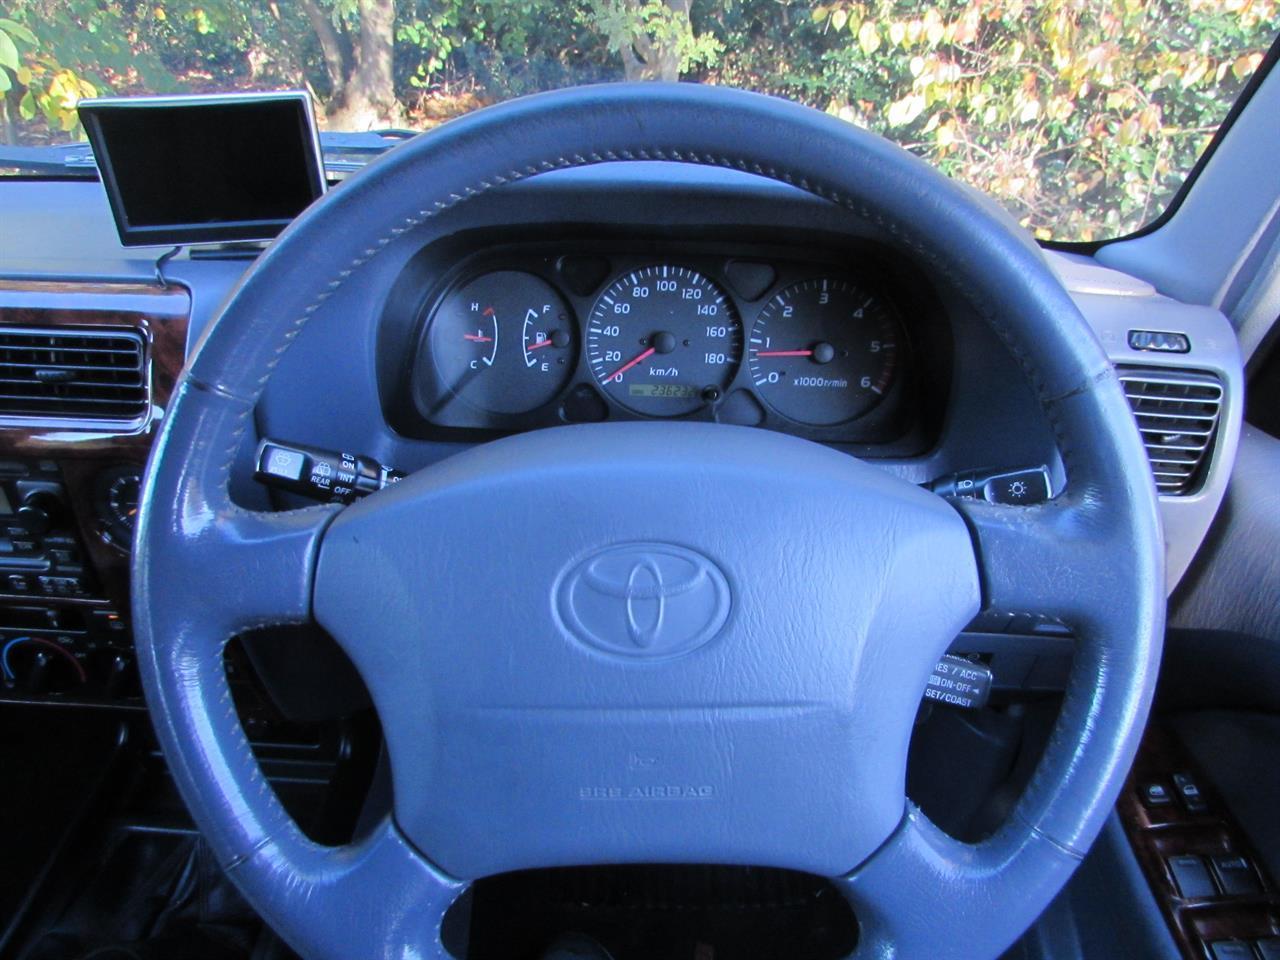 image-11, 2000 Toyota Land Cruiser Prado at Christchurch